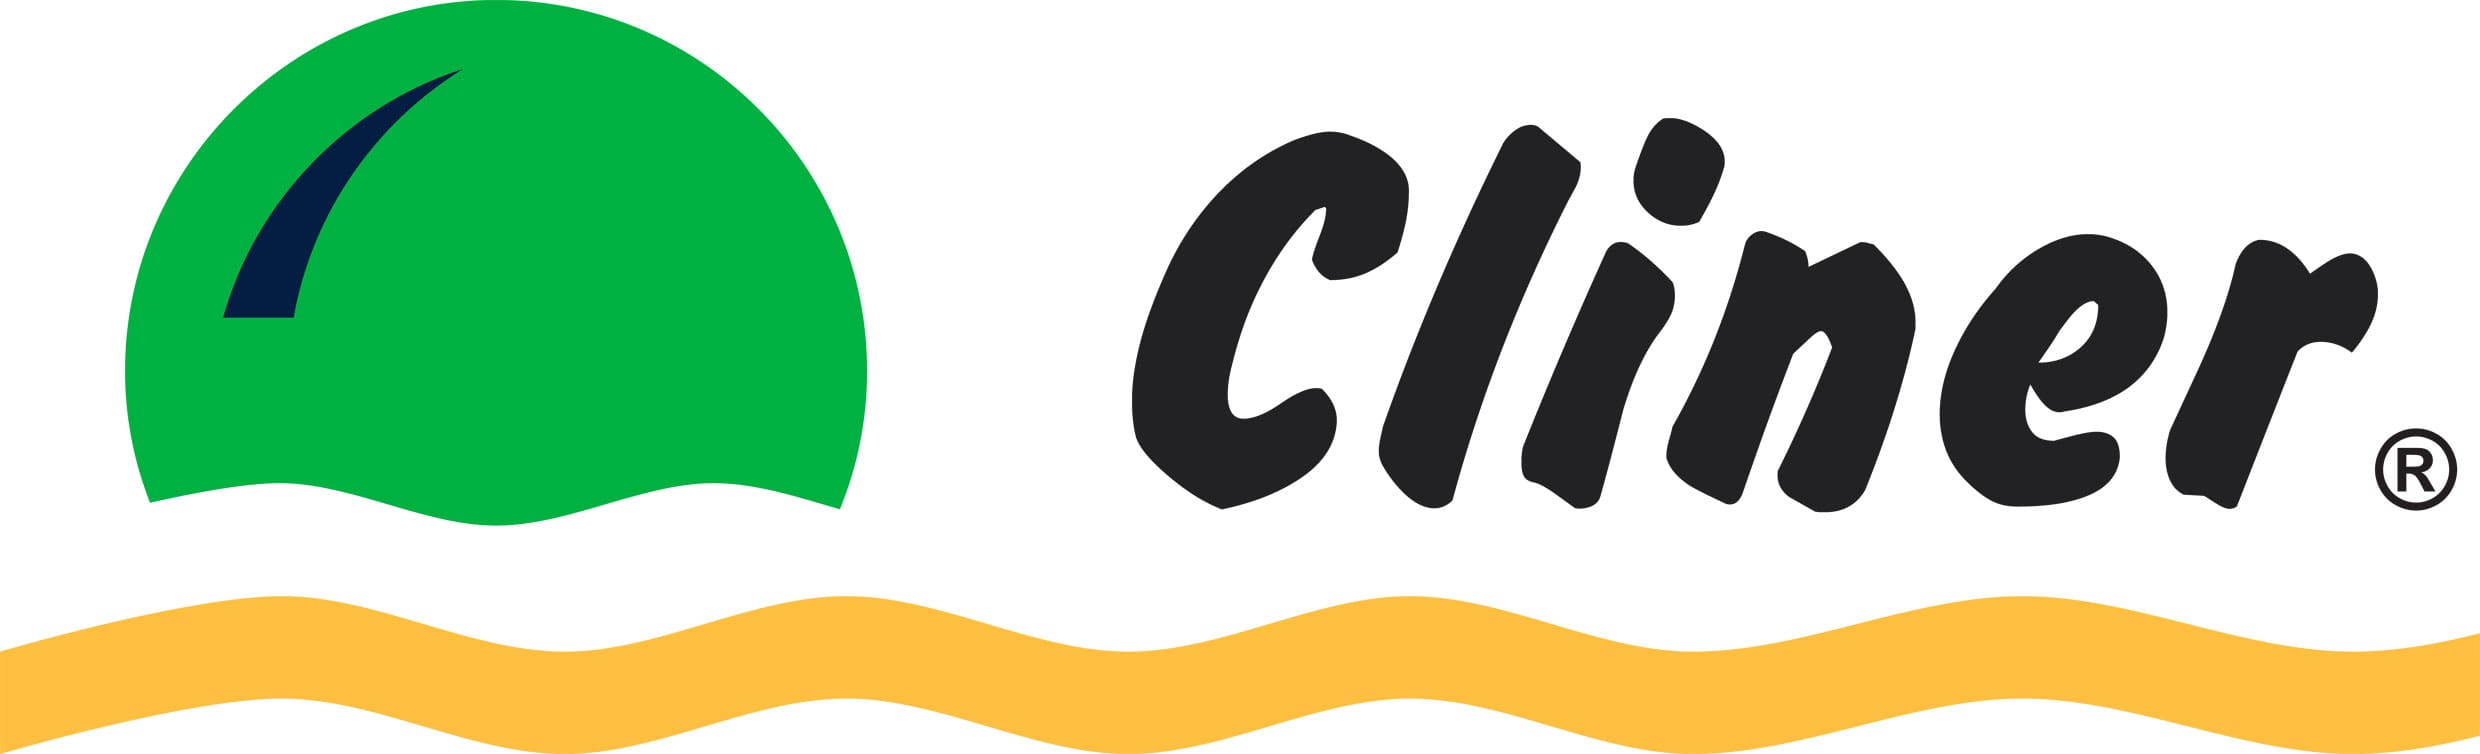 Cliner, empresa de limpieza de industrias y edificios. Control de plagas.